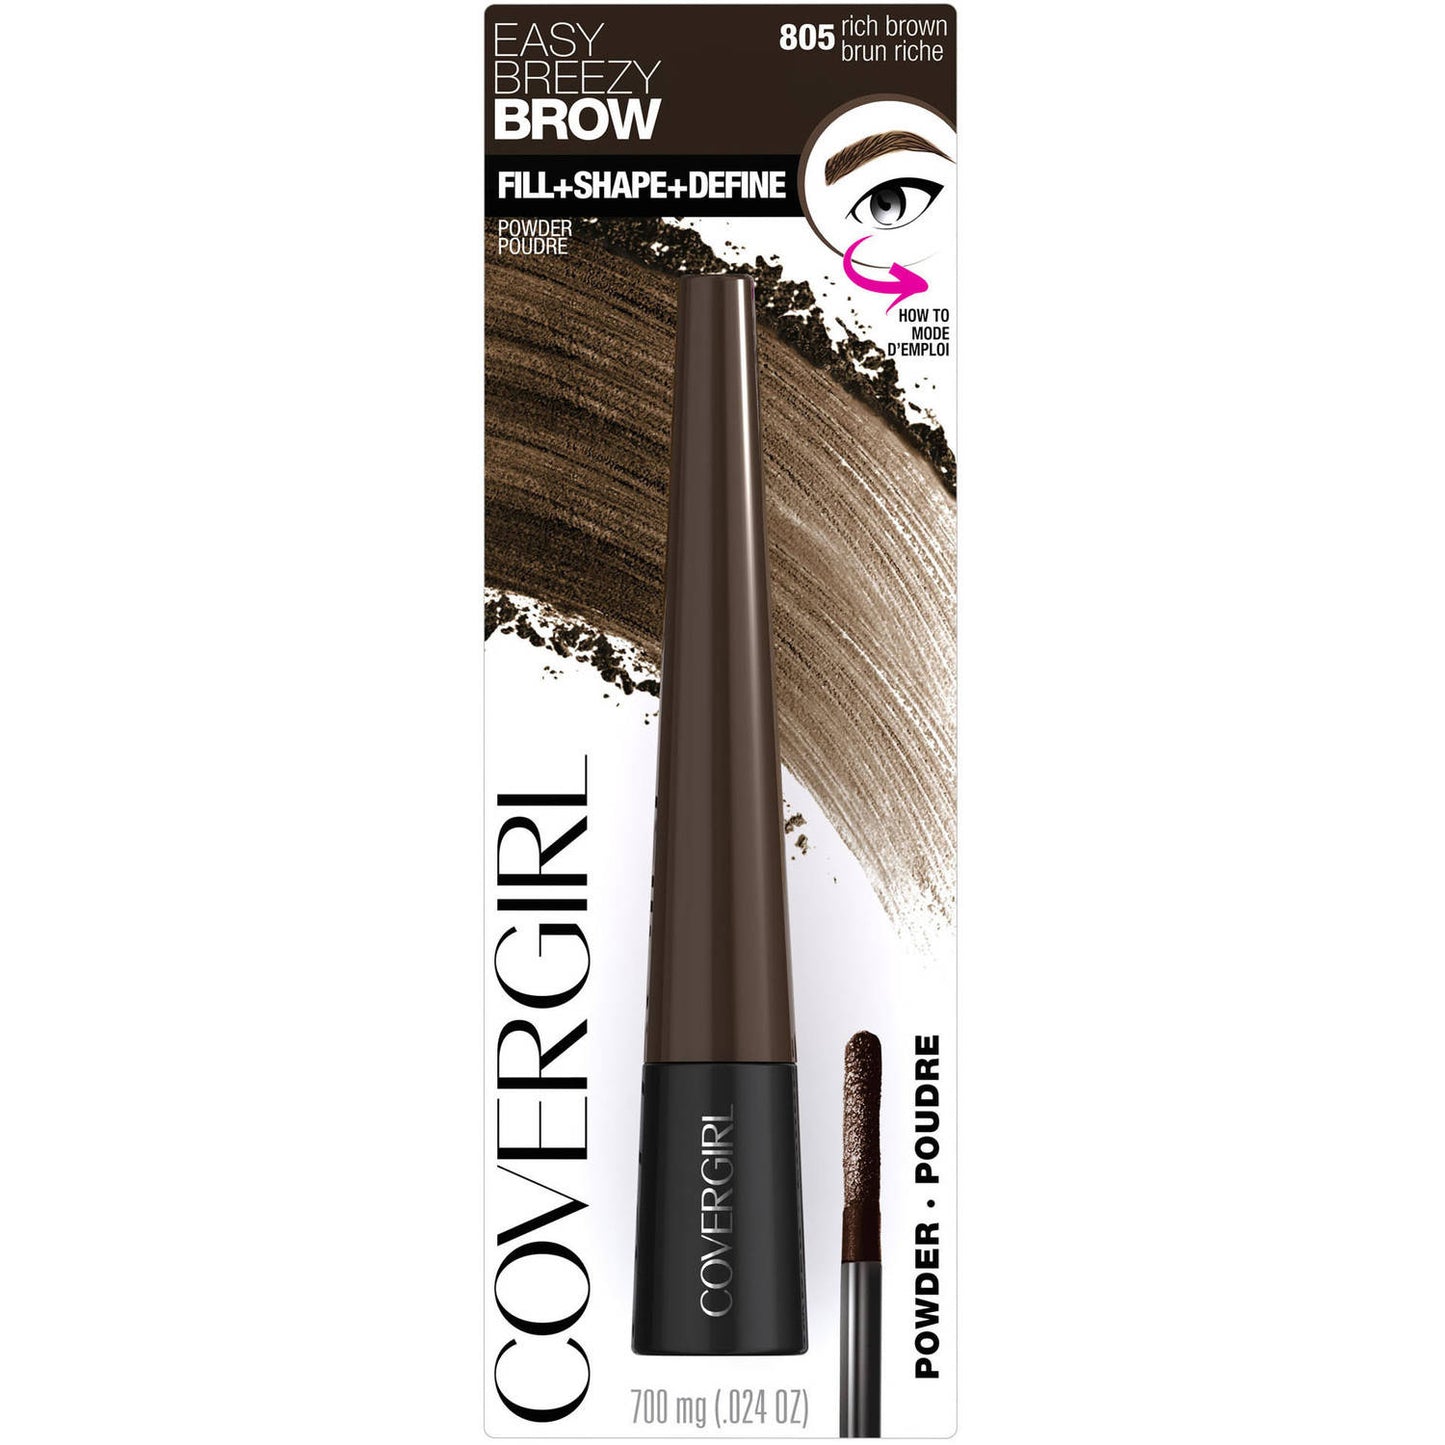 CoverGirl Easy Breezy Brow Fill Plus Shape Define Eyebrow Powder, 805 Rich Brown - ADDROS.COM